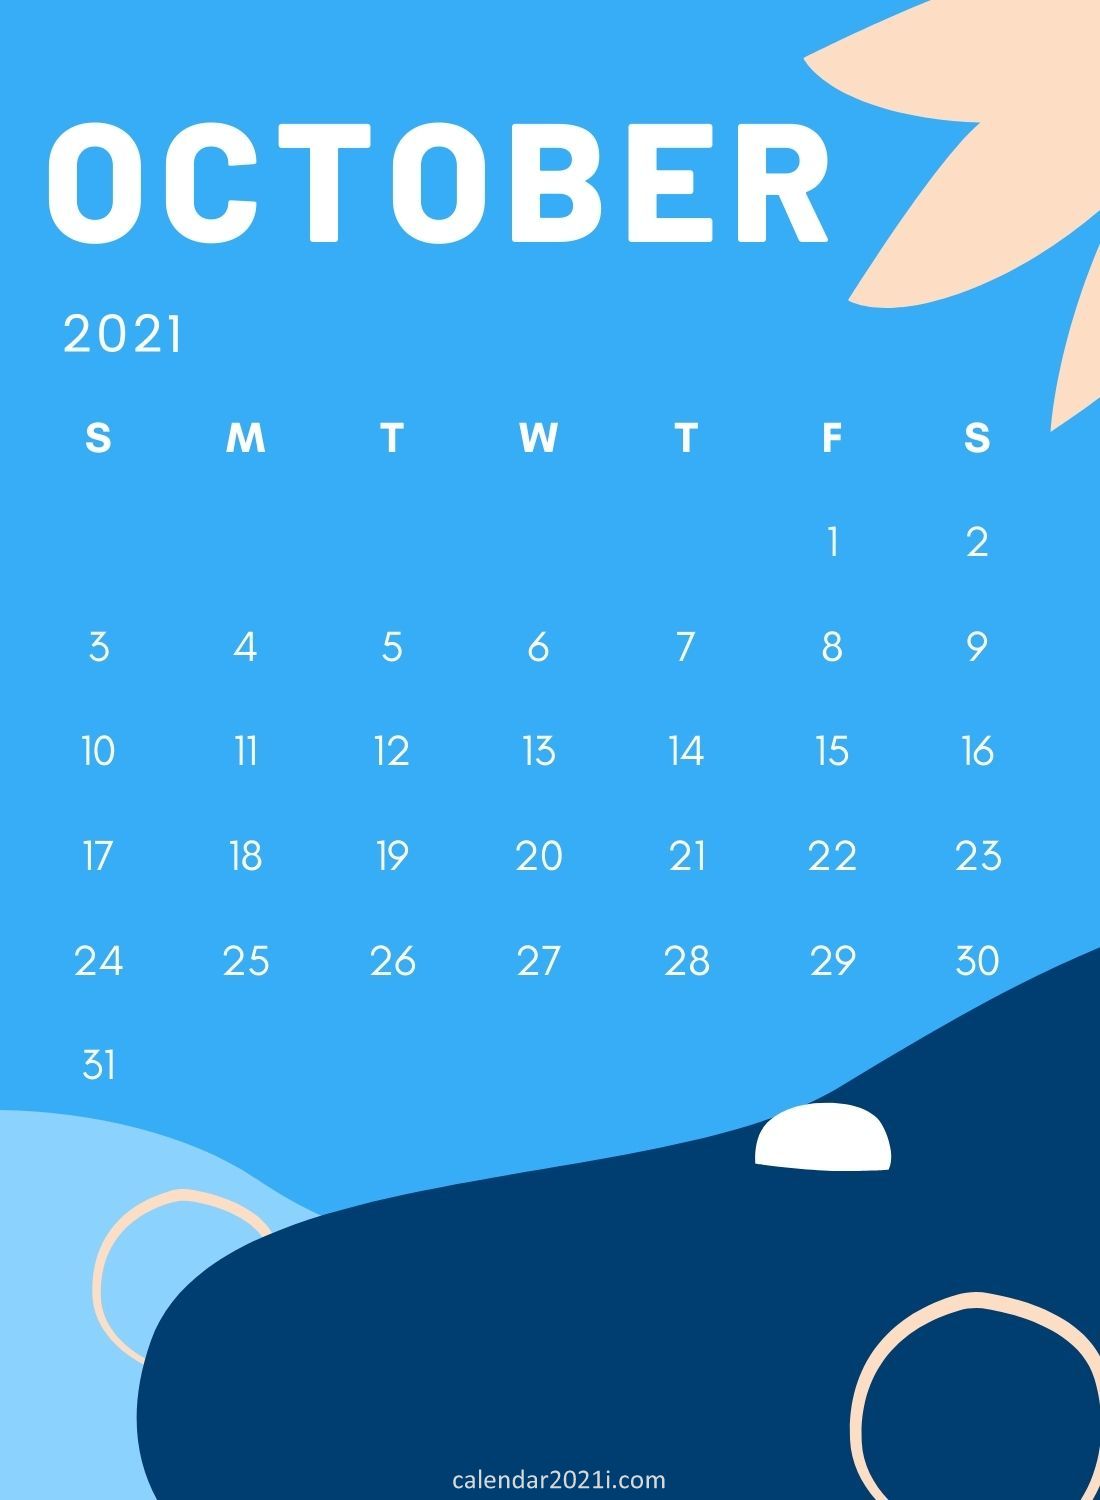 October 2021 Wall Calendar Printable